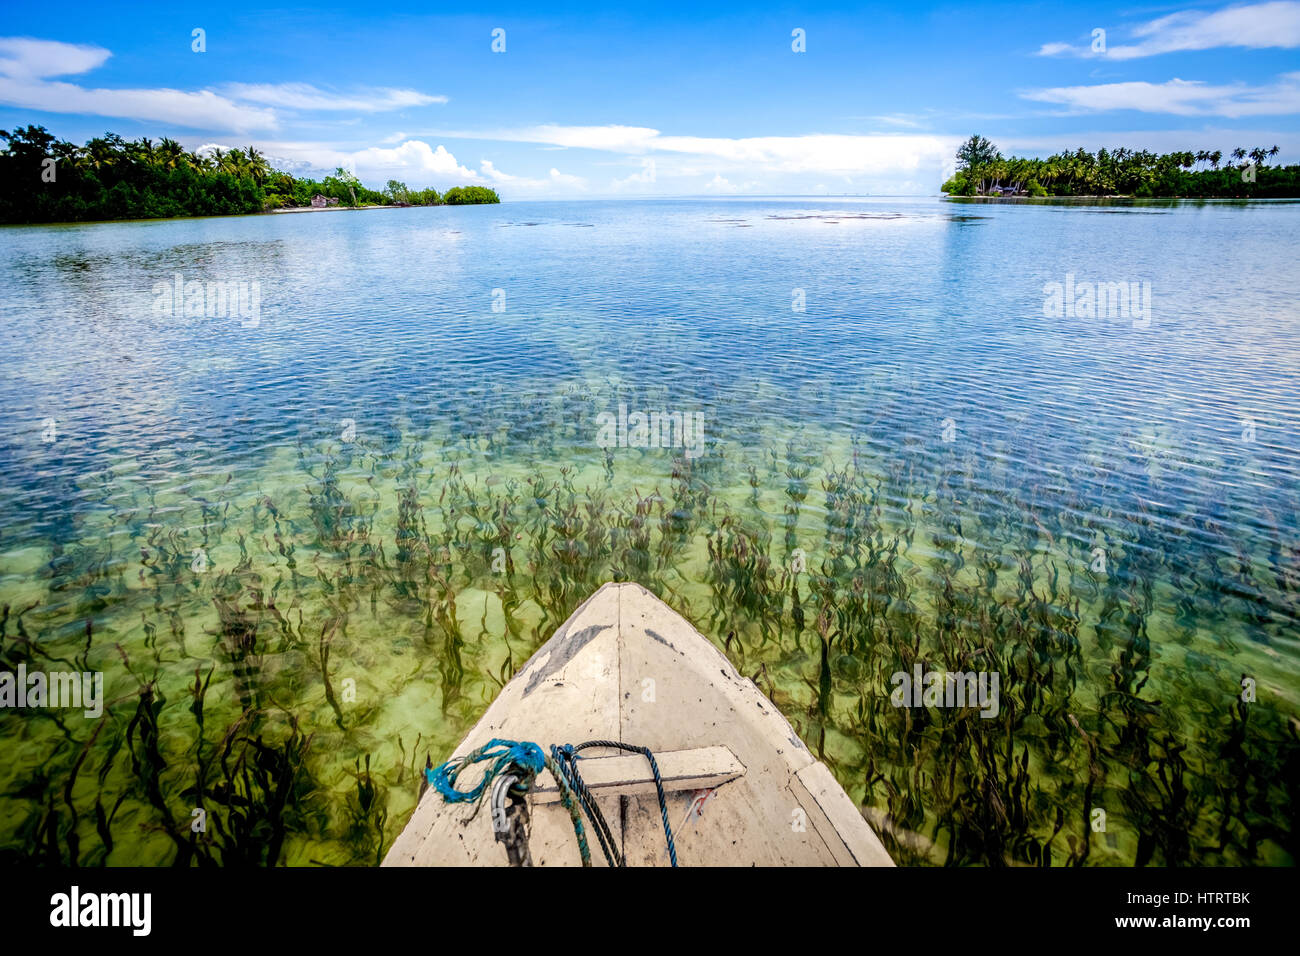 Le lit d'herbes marines est vu depuis un bateau naviguant sur l'eau côtière près de l'île de Marsegu, dans la baie de Kotania, près de l'île de Seram à Maluku, en Indonésie. Banque D'Images